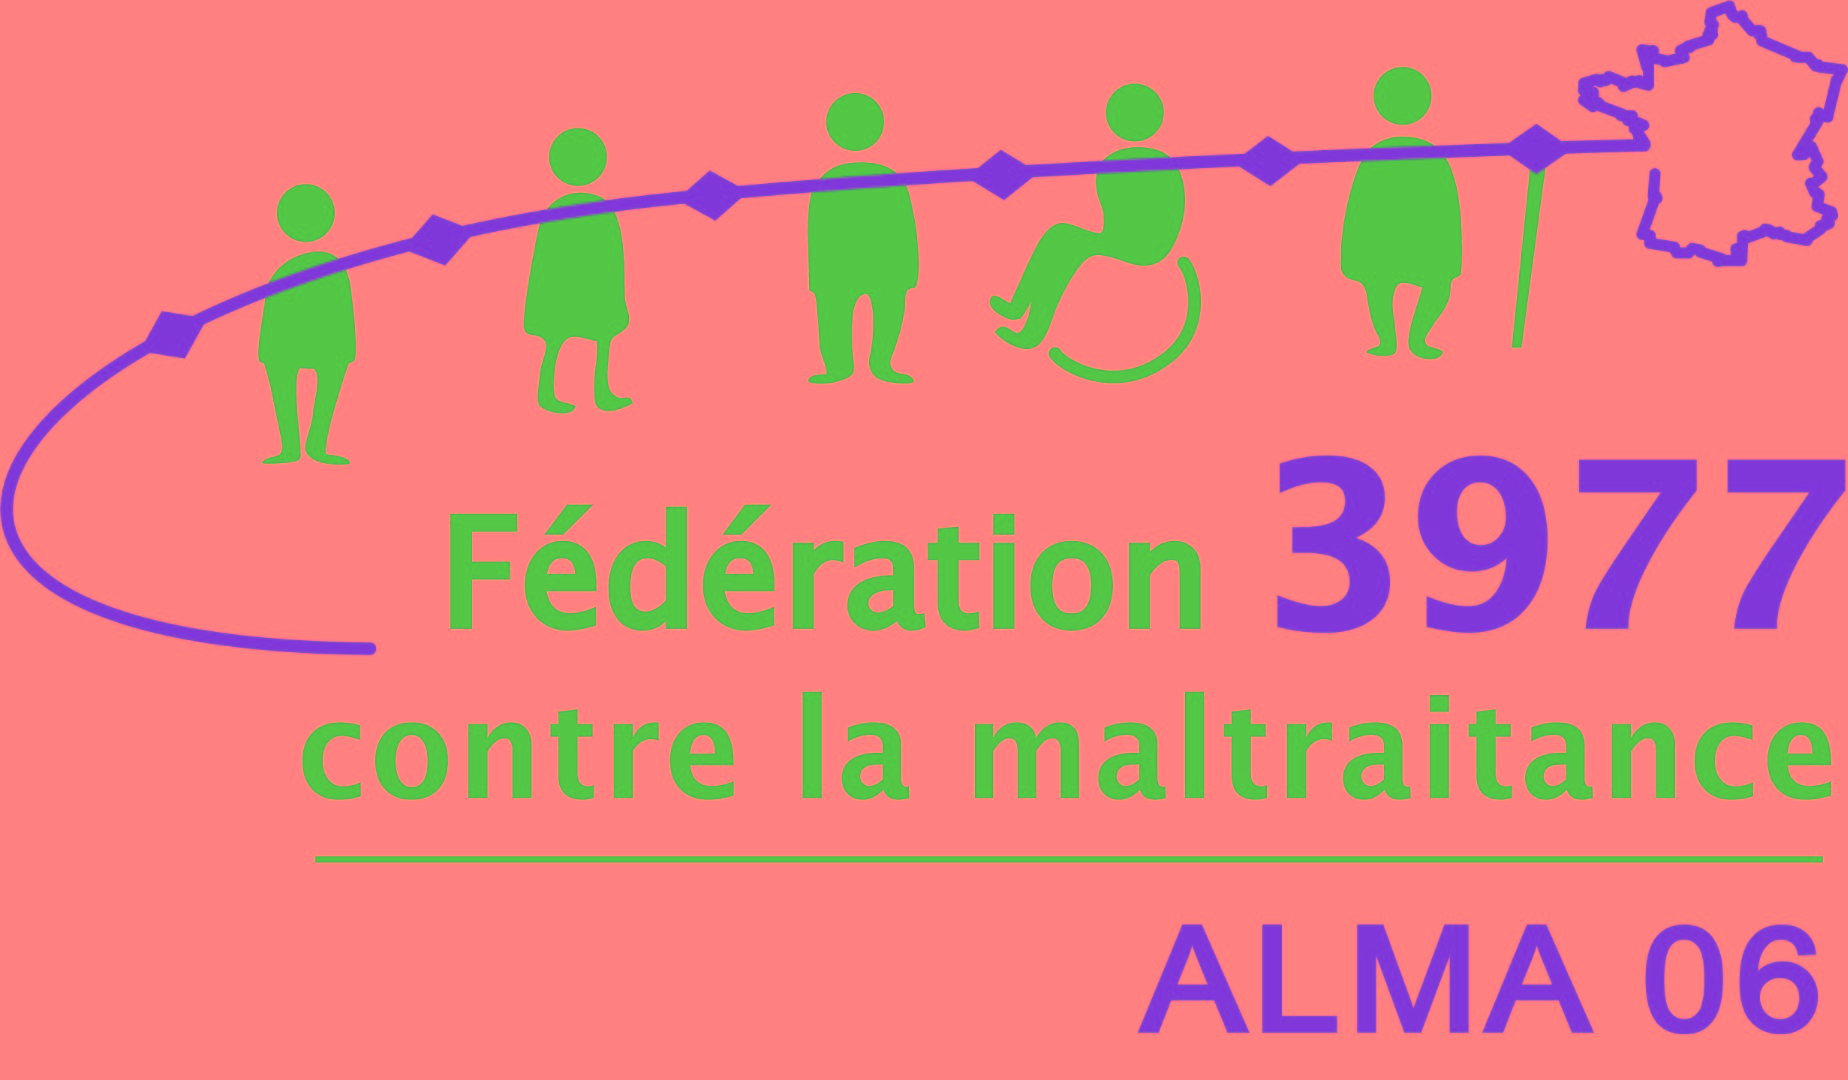 Photo de Fédération 3977 contre les maltraitances - ALMA 06 (ALMAZUR) à ALPES MARITIME (TOUT LE DEPARTEMENT)